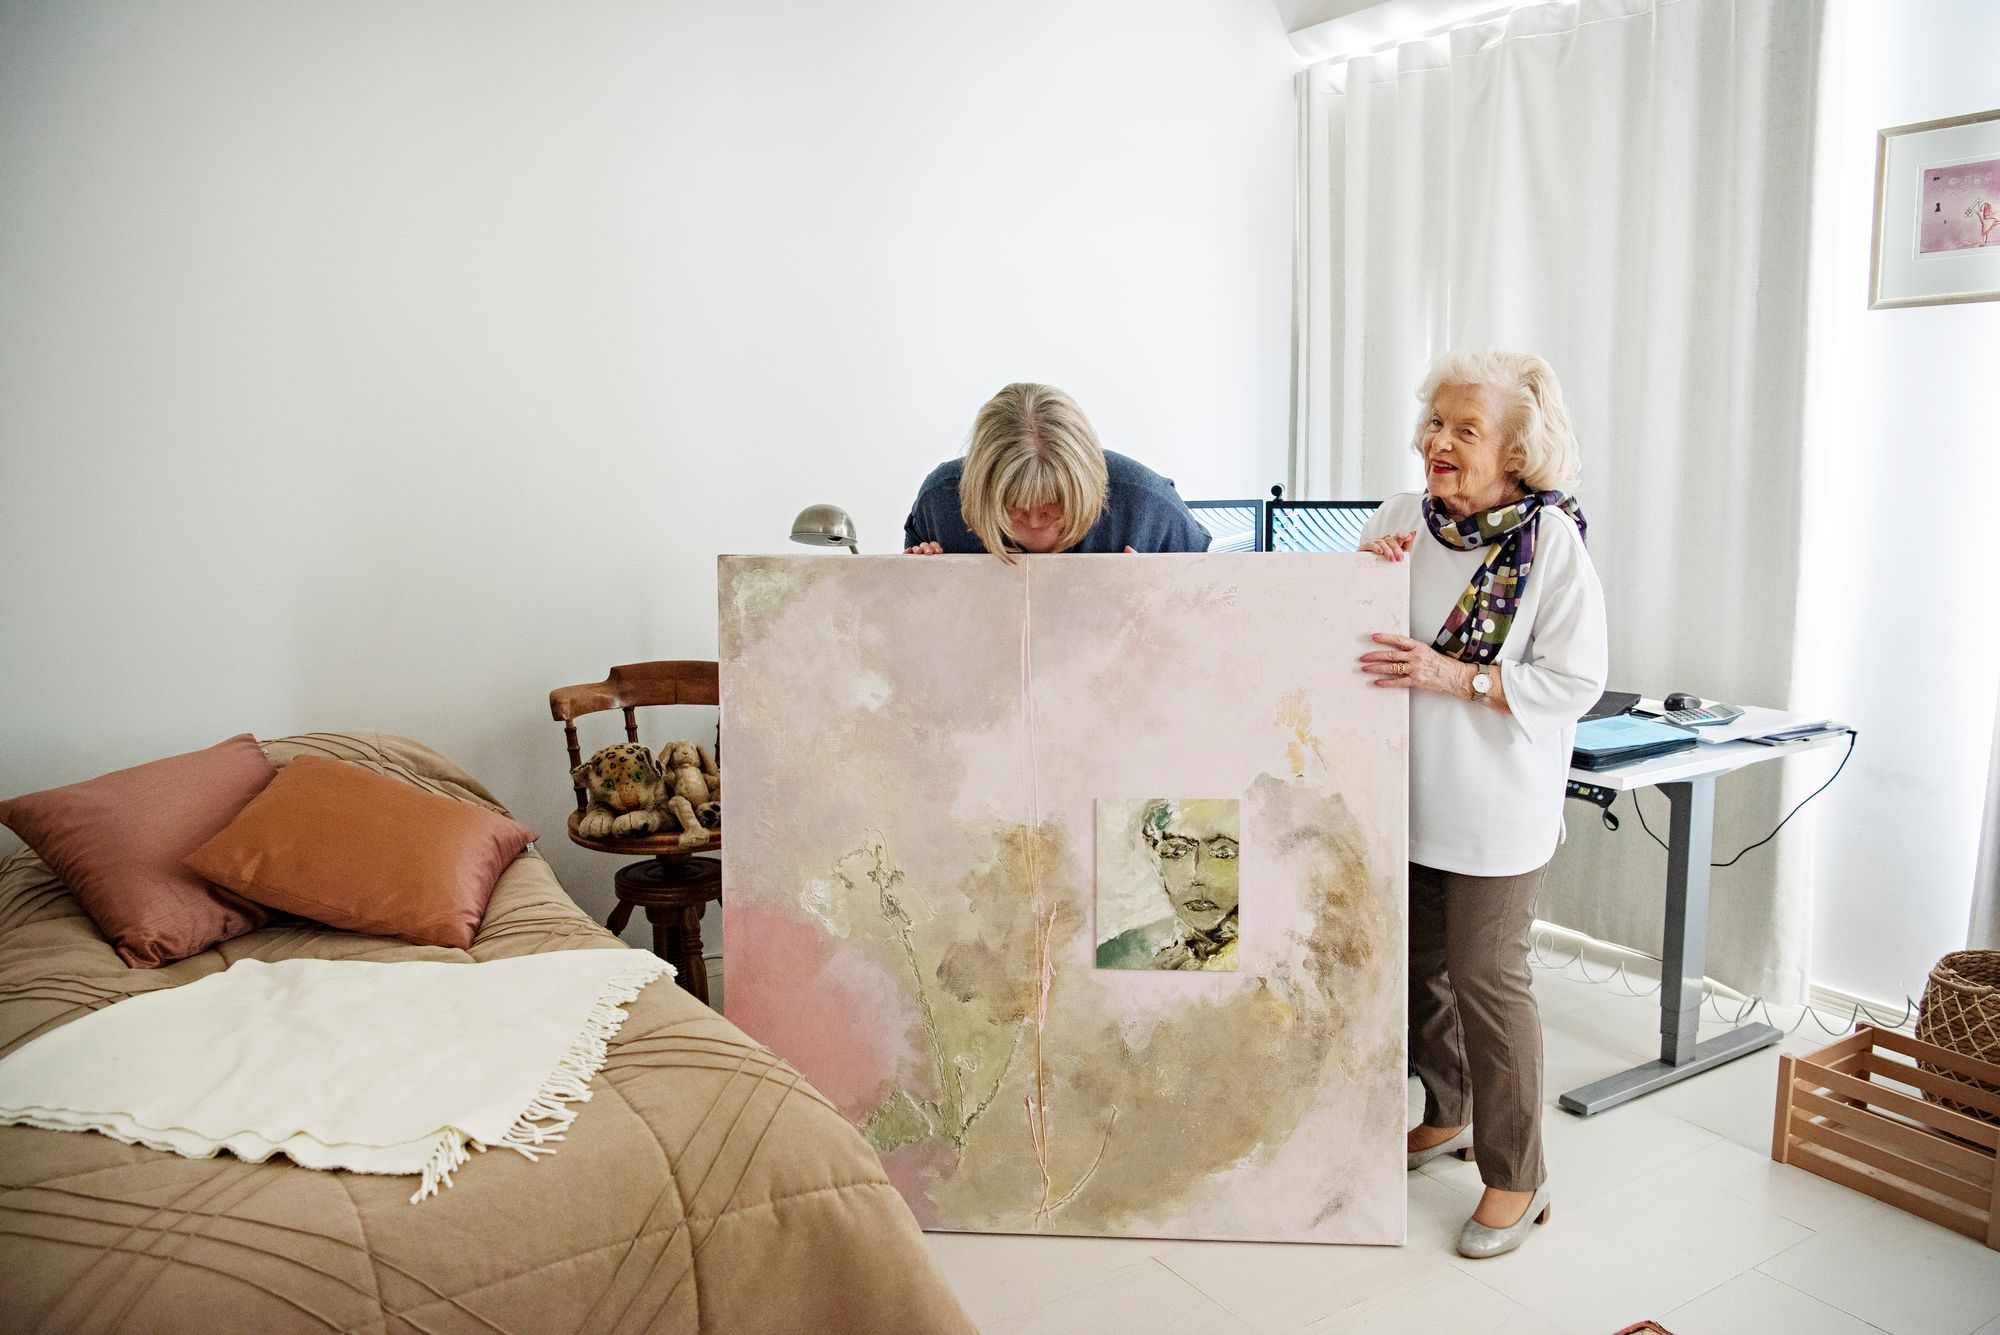 Pirjo antoi Aislan työhuoneen seinälle Jouni Vuorenojan maalauksen Total stranger. © Susa Junnola